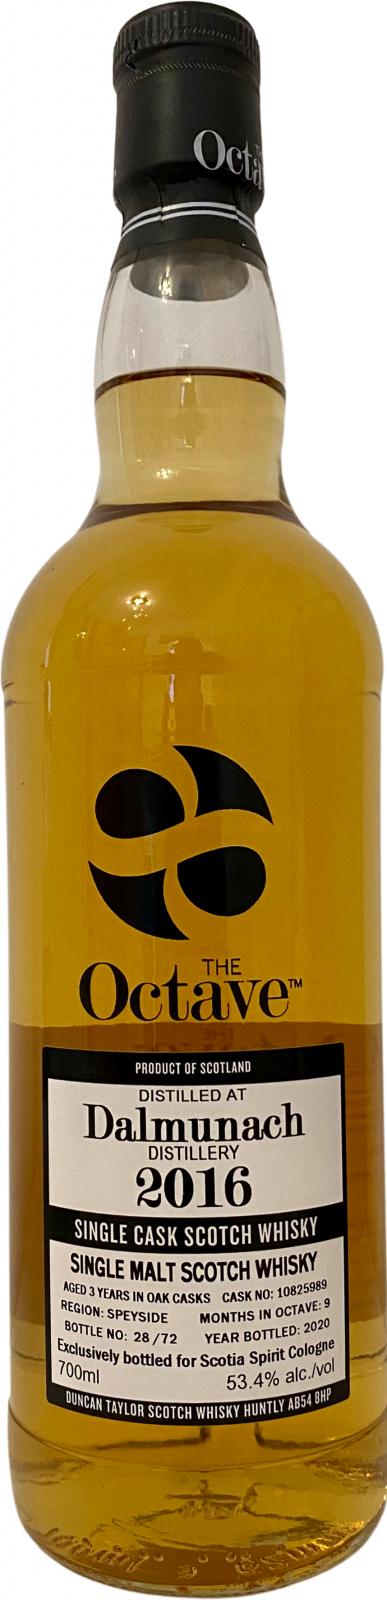 Dalmunach 2016 DT The Octave Oak casks #10825989 Scotia Spirit Cologne 53.4% 700ml